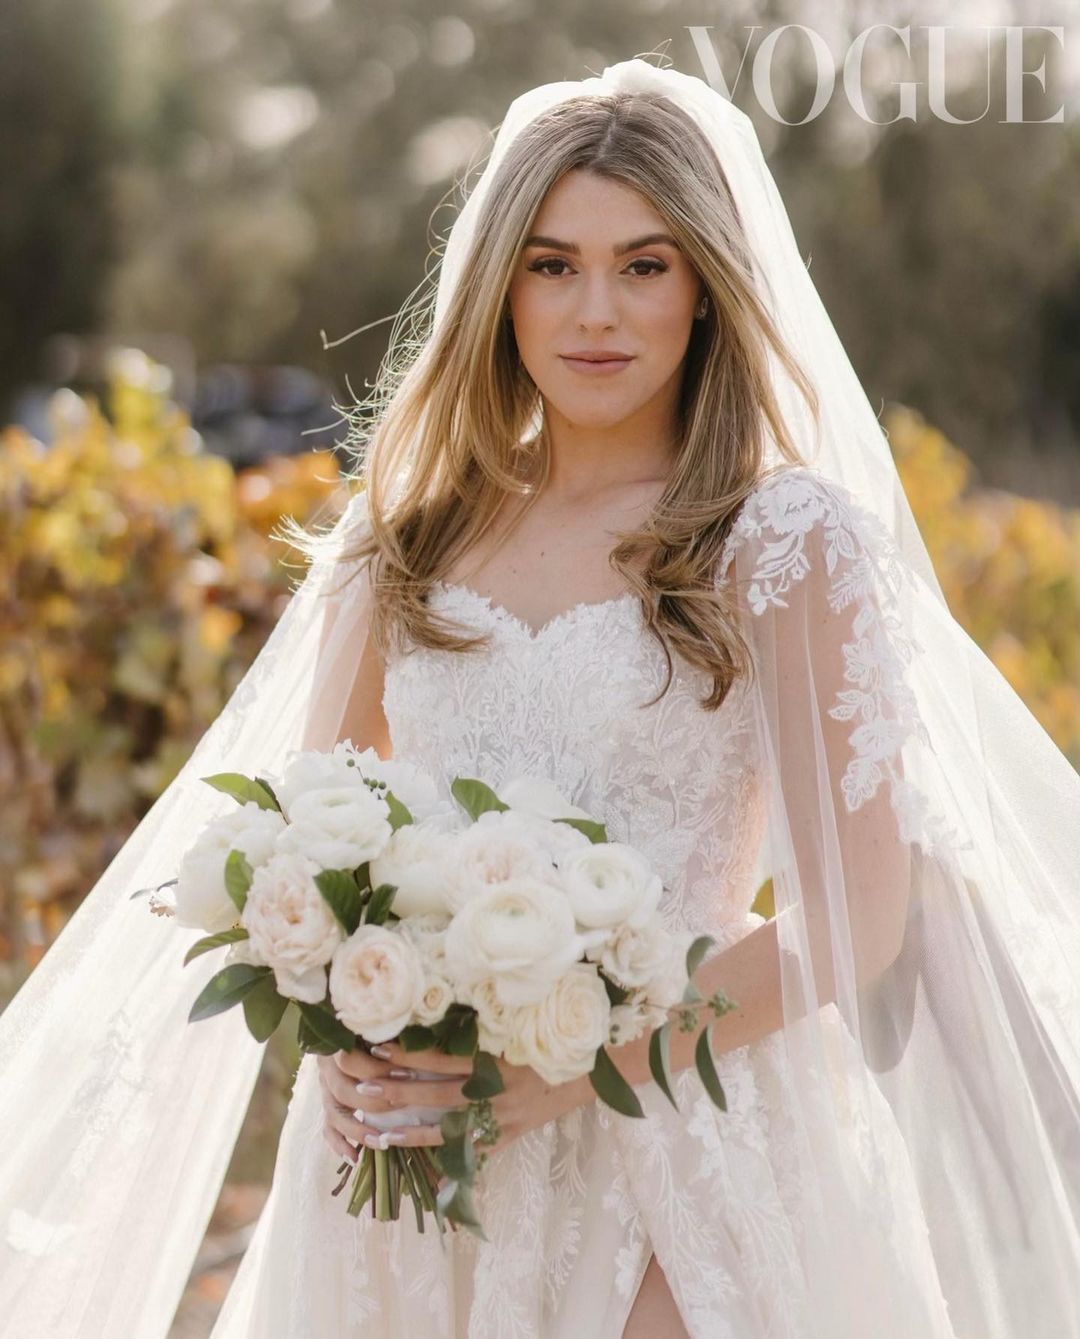 Đám cưới Taylor Lautner gây sốt: Cô dâu cùng tên đẹp không kém minh tinh, người sói bế bổng hôn vợ say đắm - Ảnh 5.